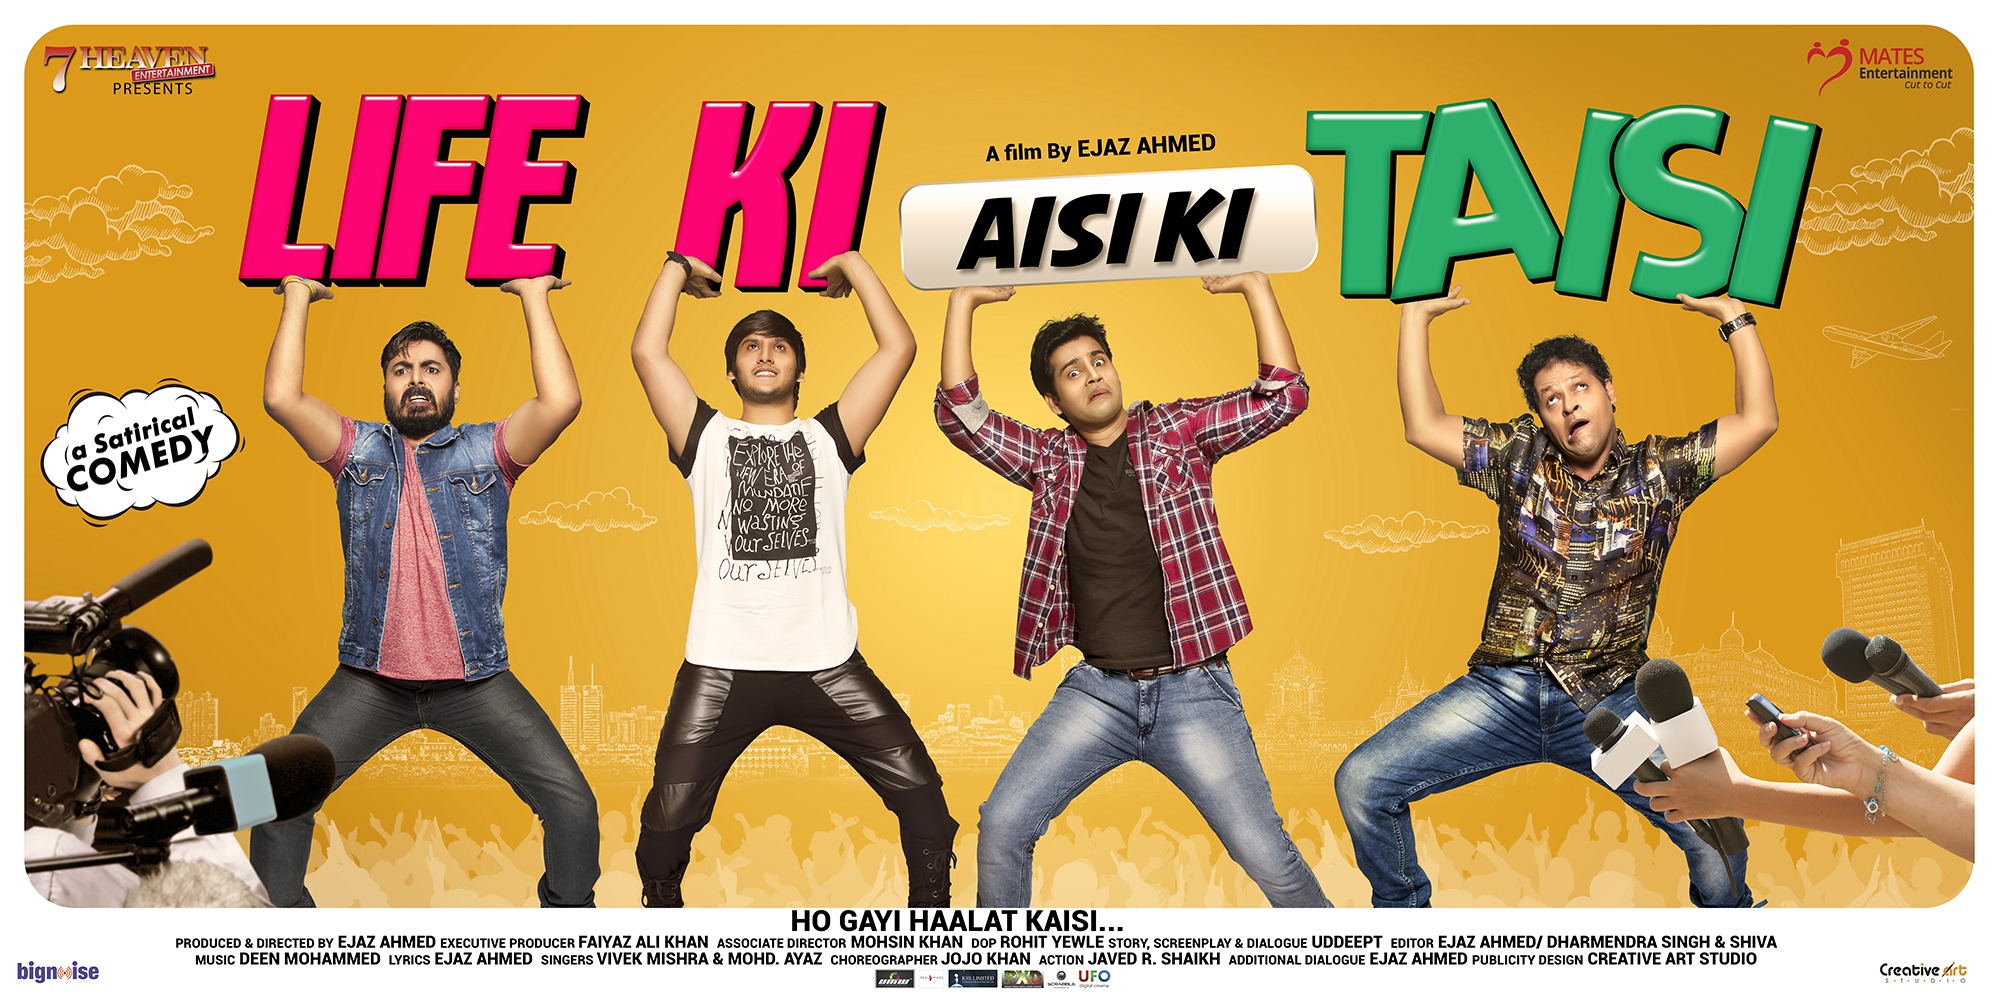 Mega Sized Movie Poster Image for Life Ki Aisi Ki Taisi (#6 of 6)